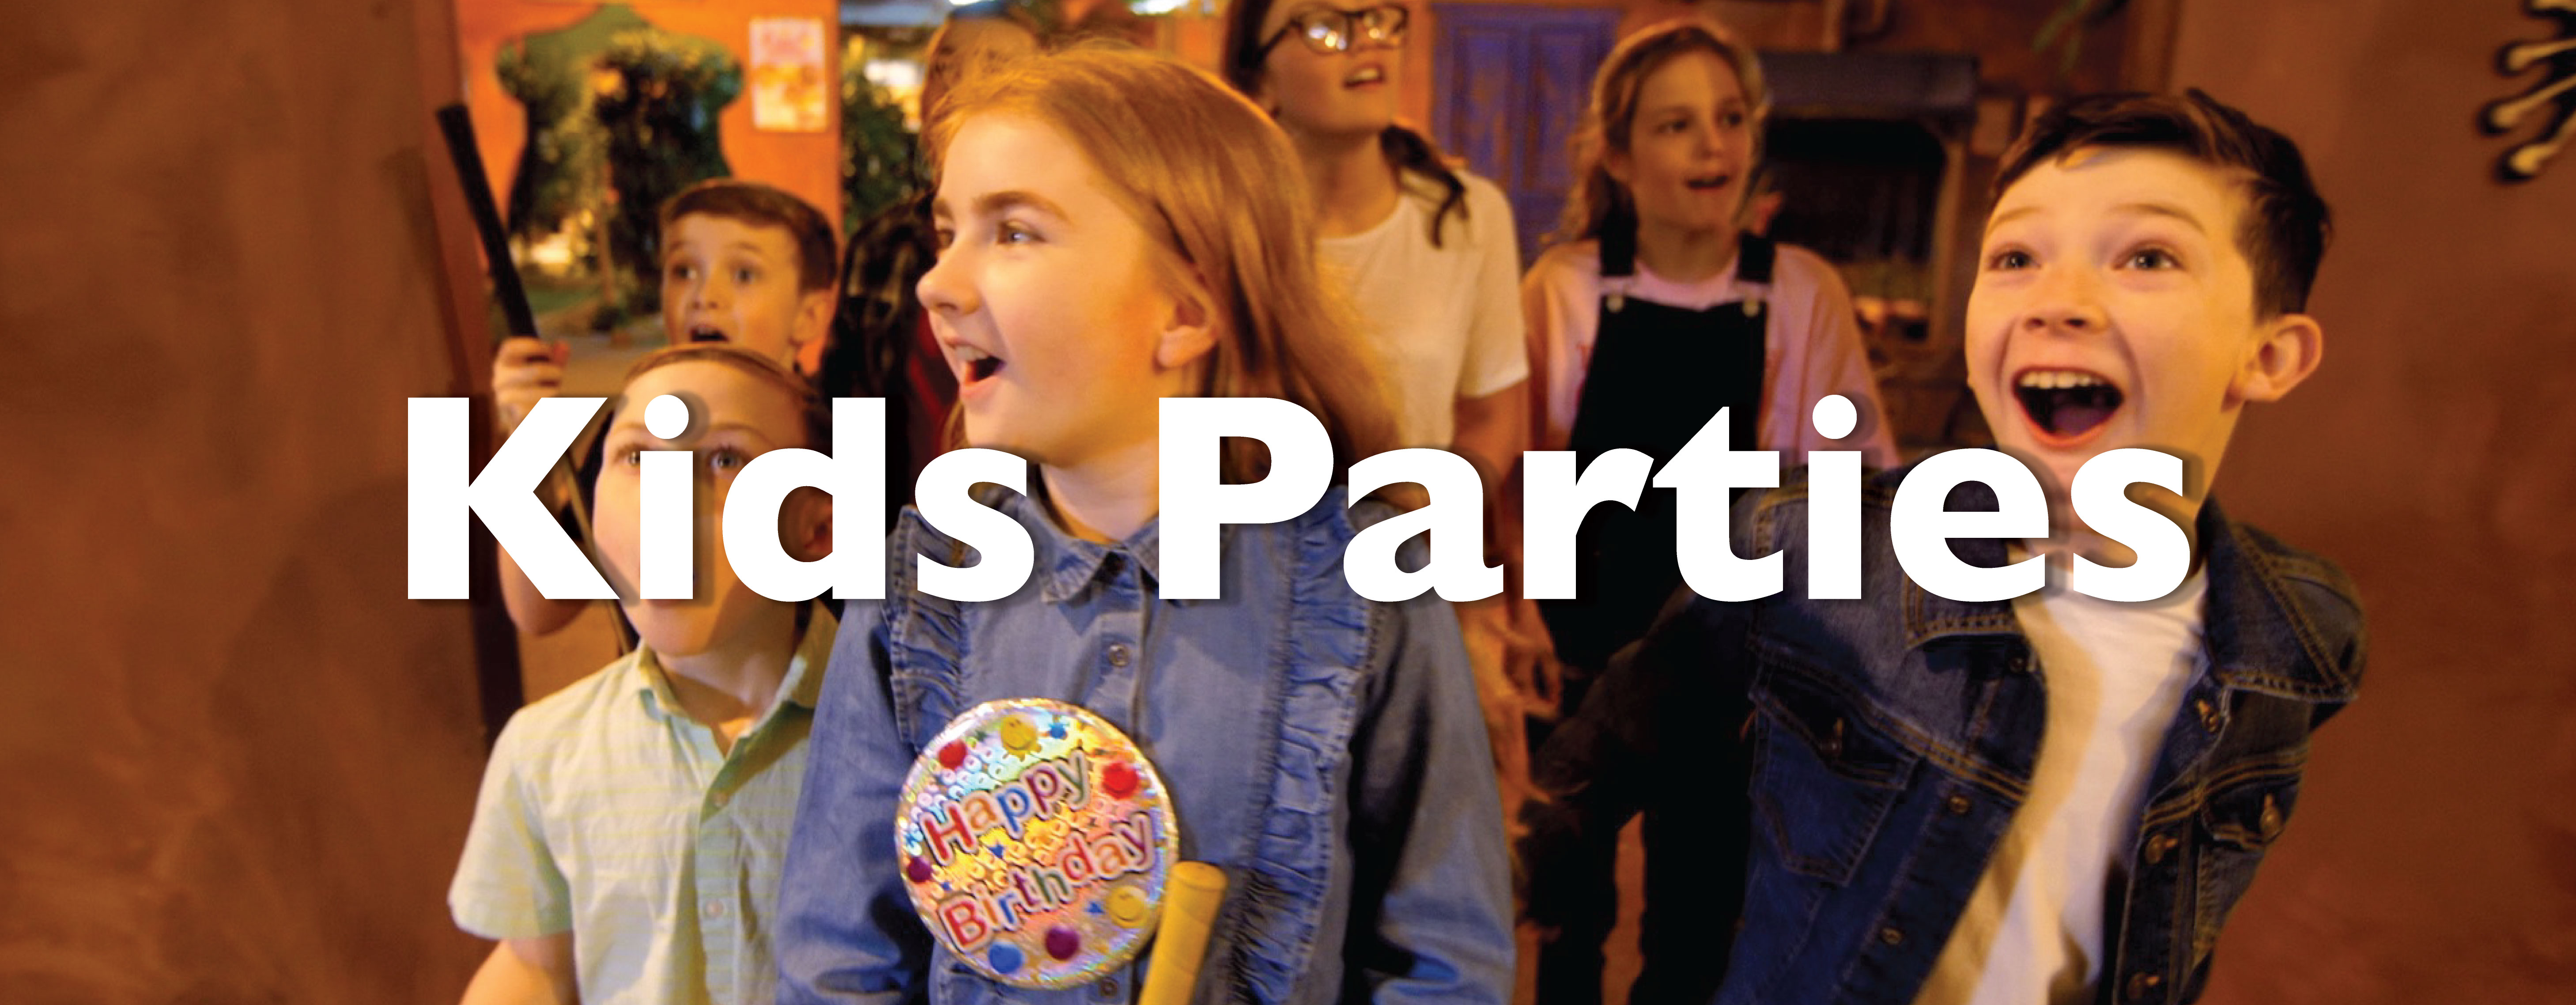 Kids parties banner 